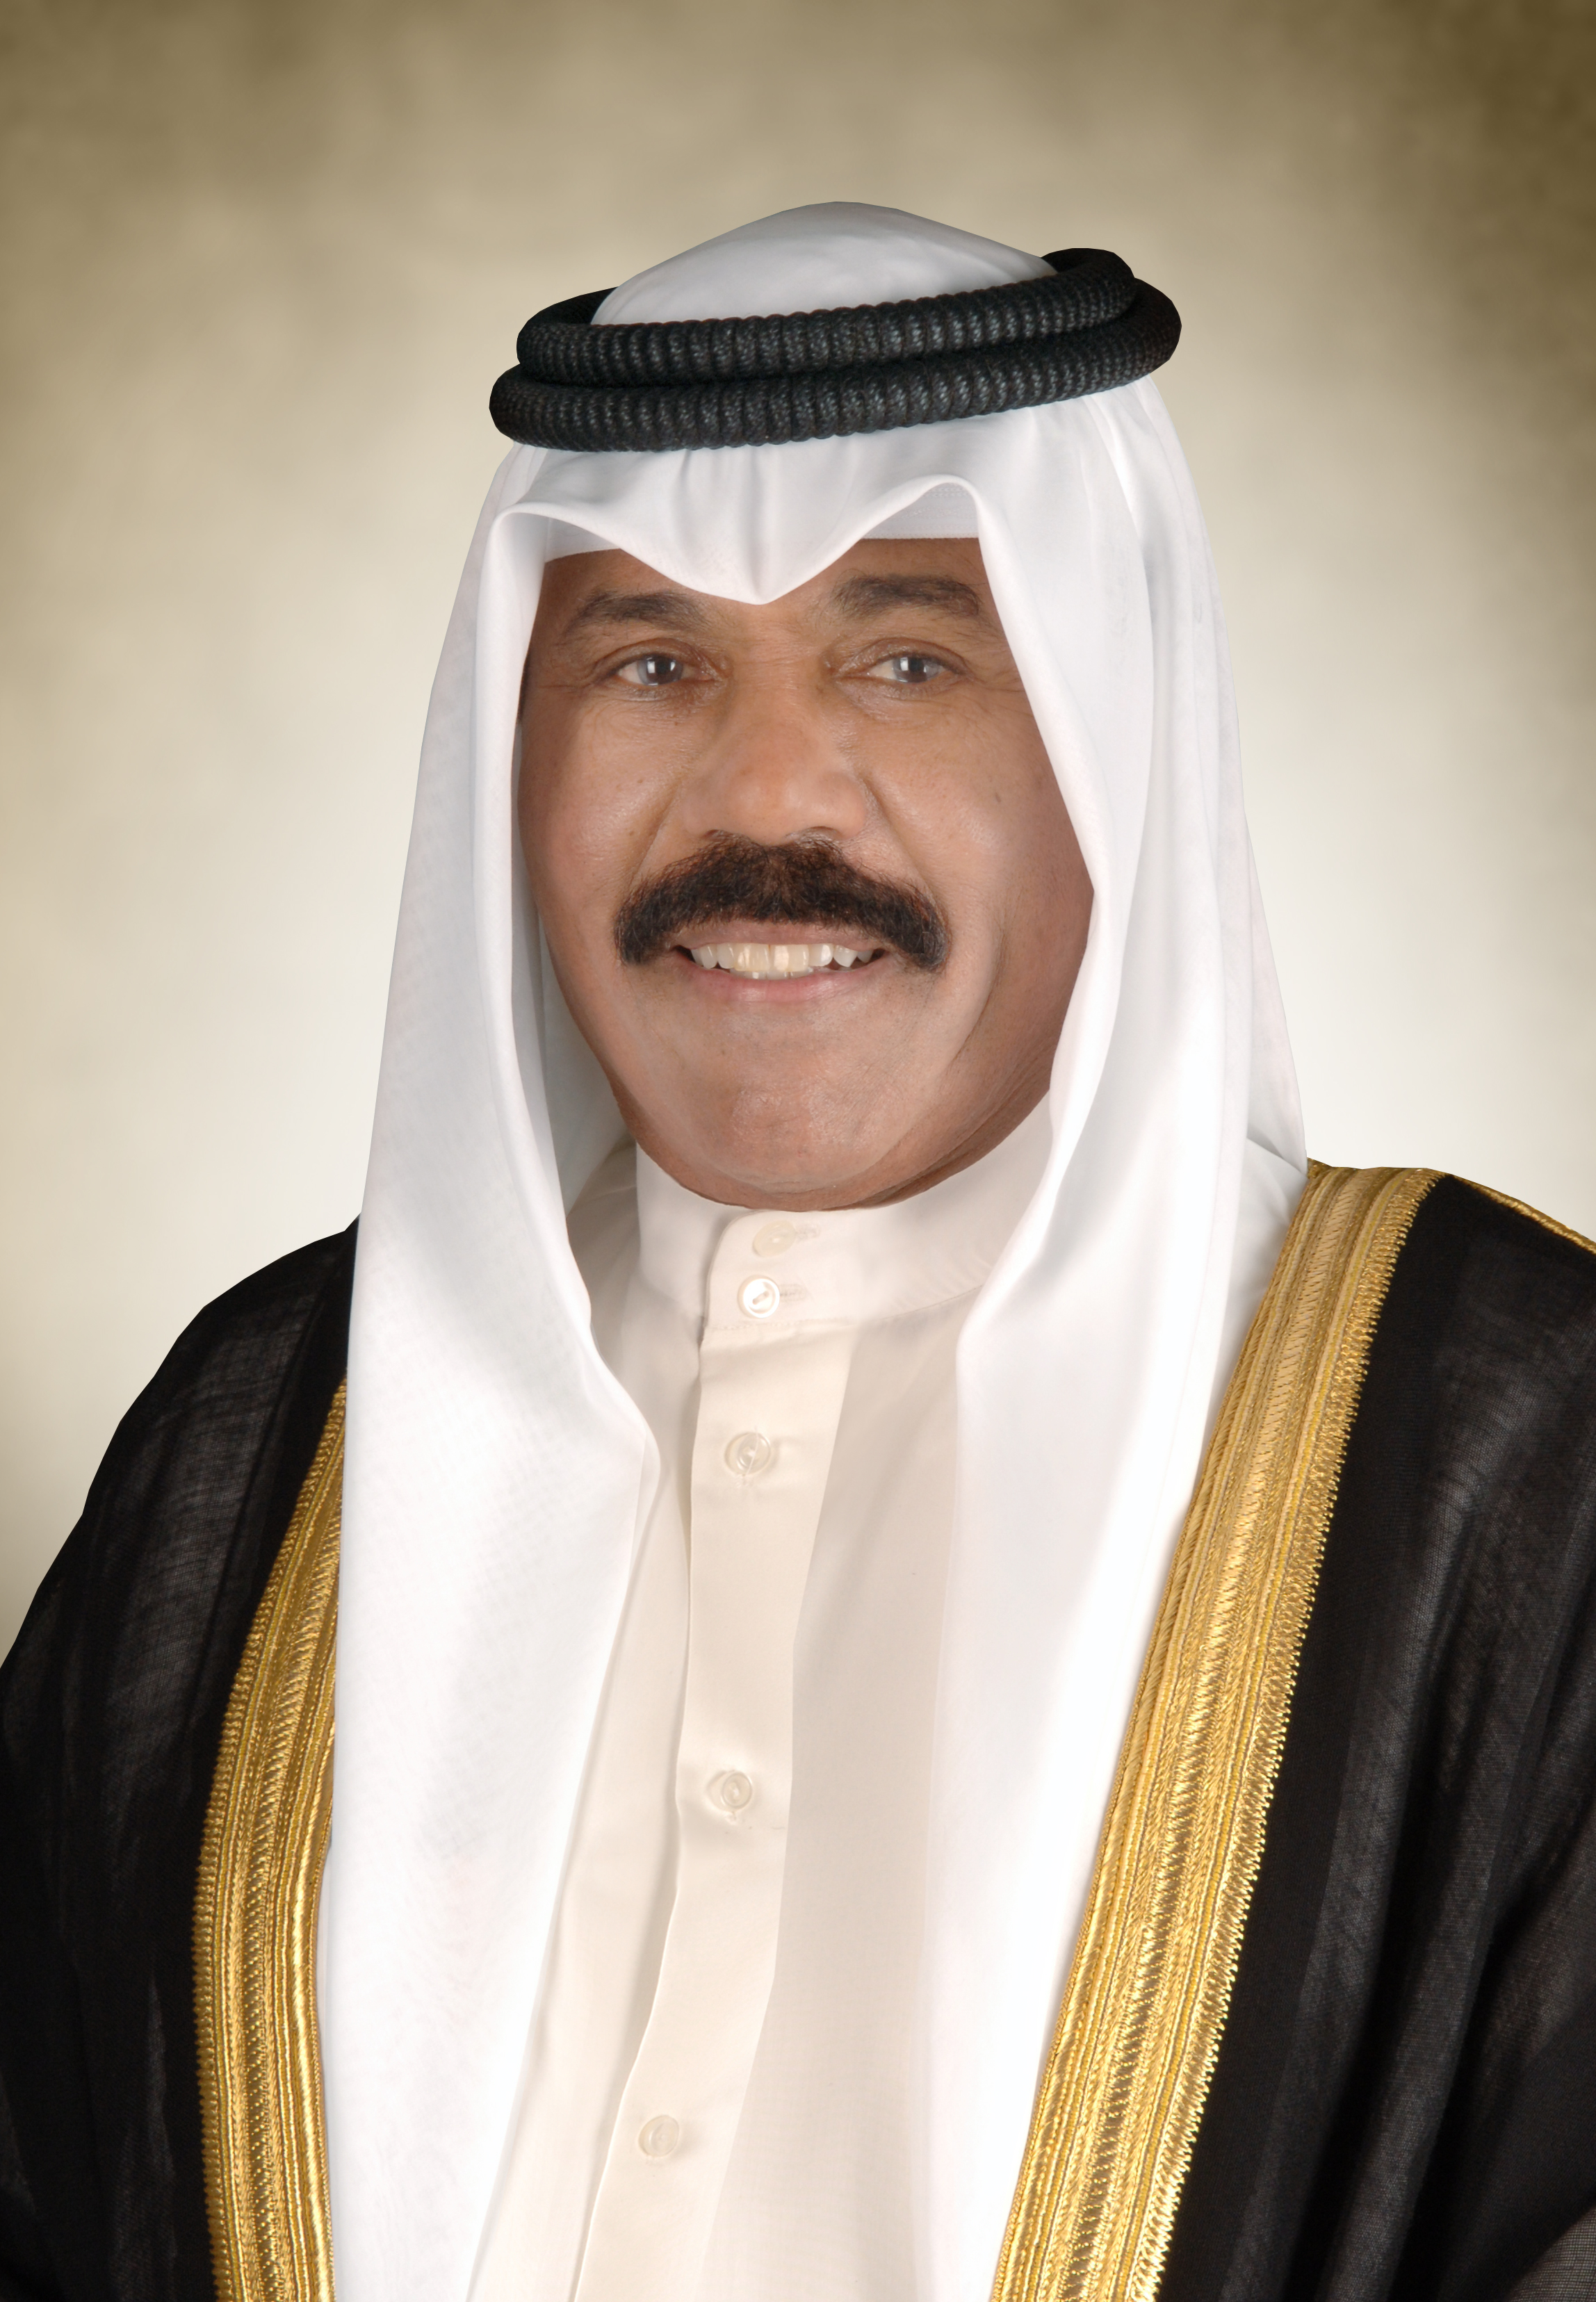 سمو أمير البلاد يتلقى رسالة تهنئة من رئيس مجلس النواب العراقي